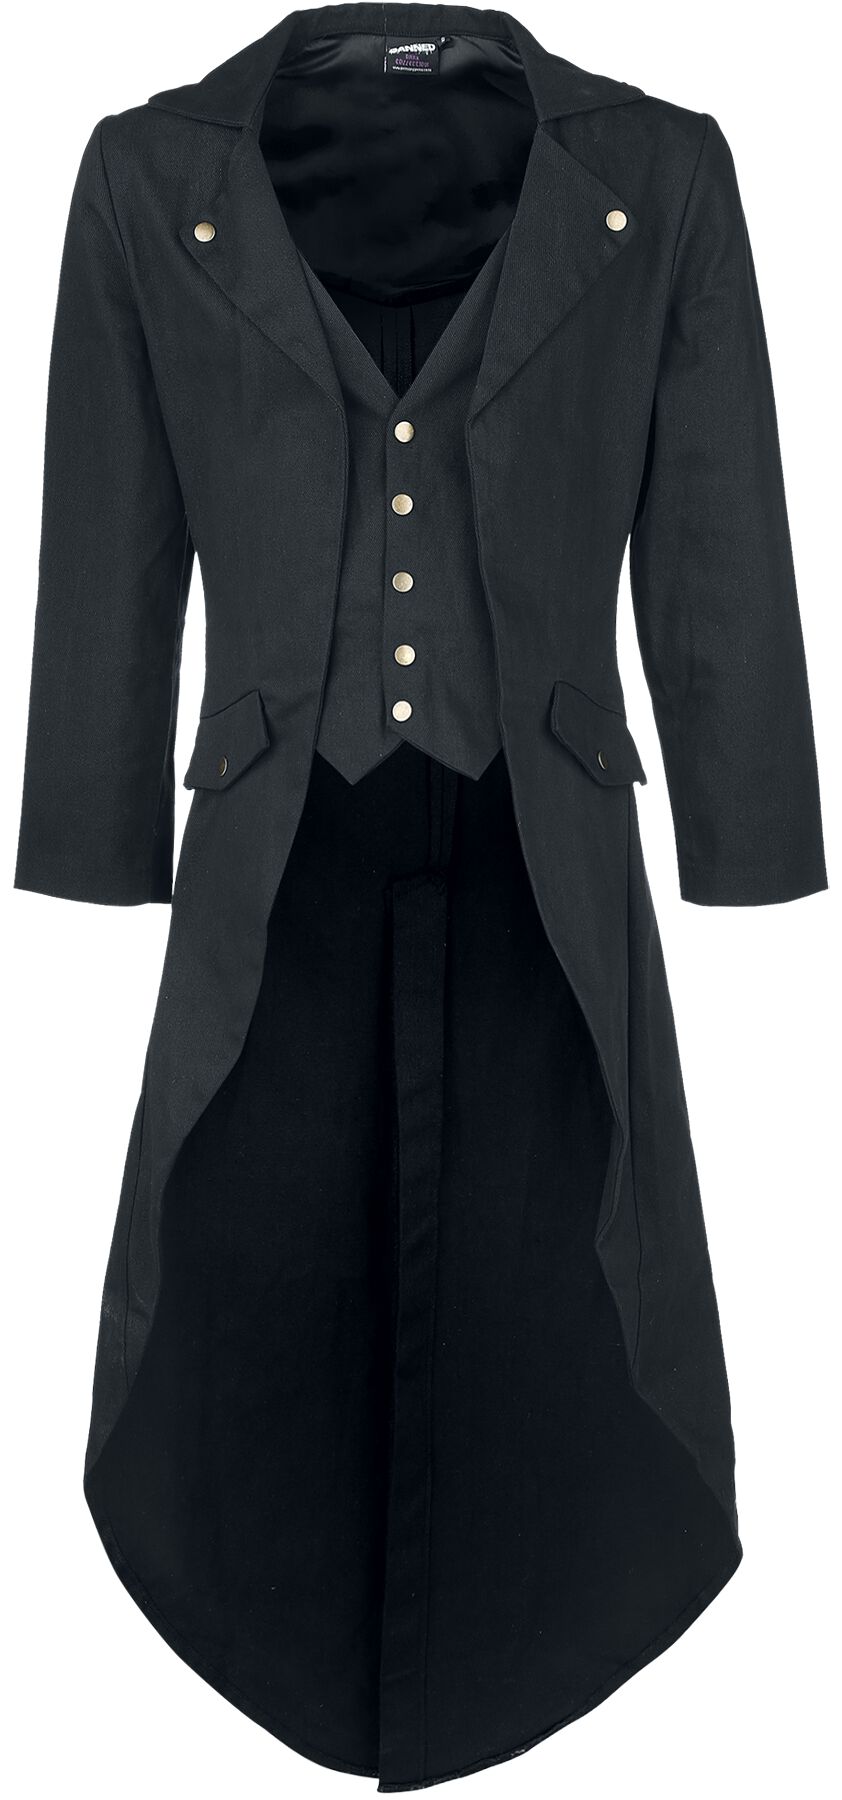 Banned Alternative - Gothic Militärmantel - Dovetail Coat - S bis 5XL - für Männer - Größe M - schwarz von Banned Alternative